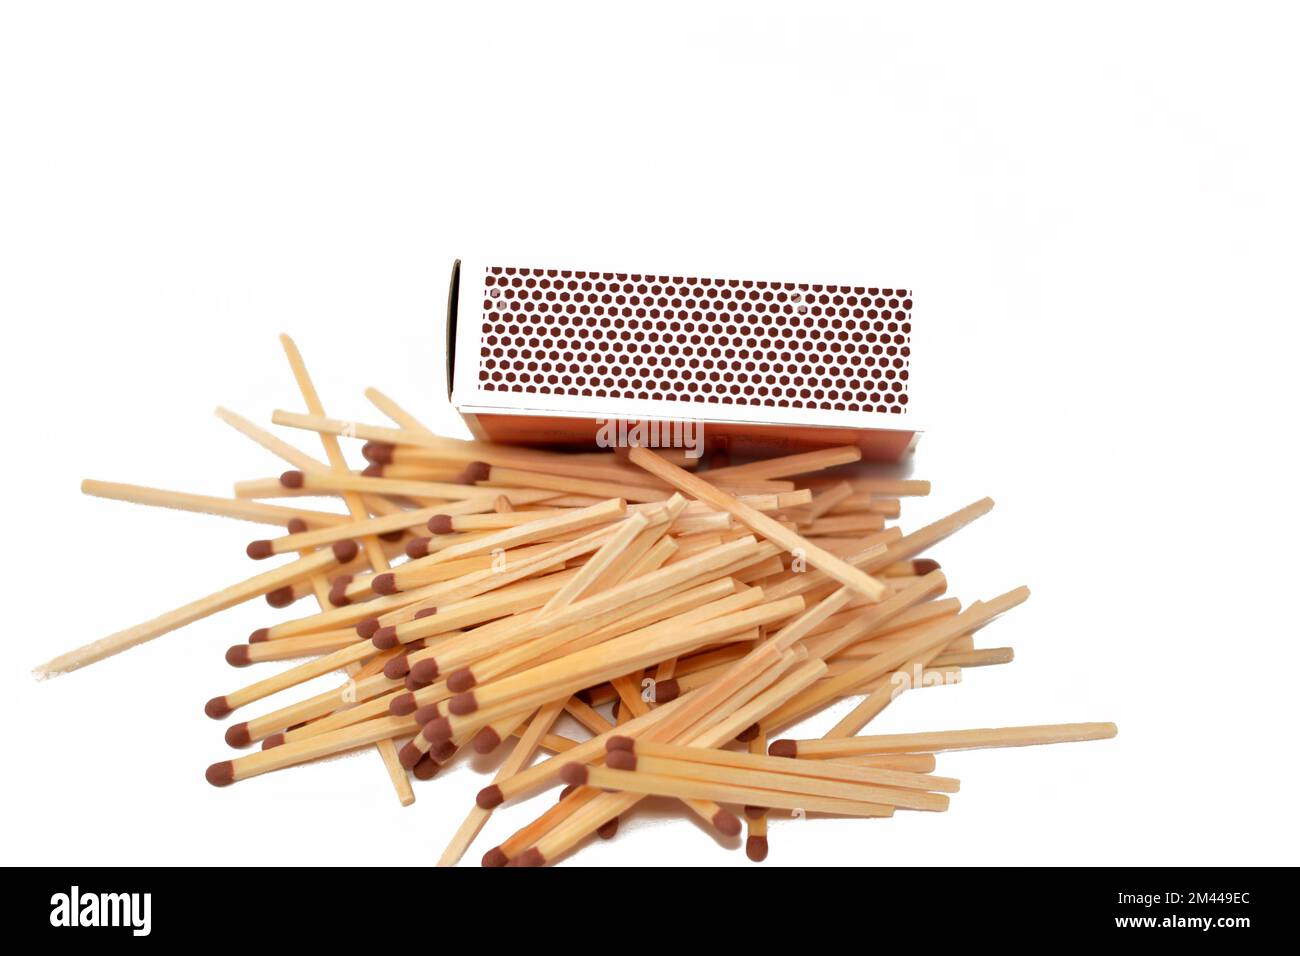 Matchstick, un fósforo es una herramienta para iniciar un fuego, fósforos hechos de pequeños palos de madera o papel rígido, un extremo está recubierto con un material encendido por fr Foto de stock